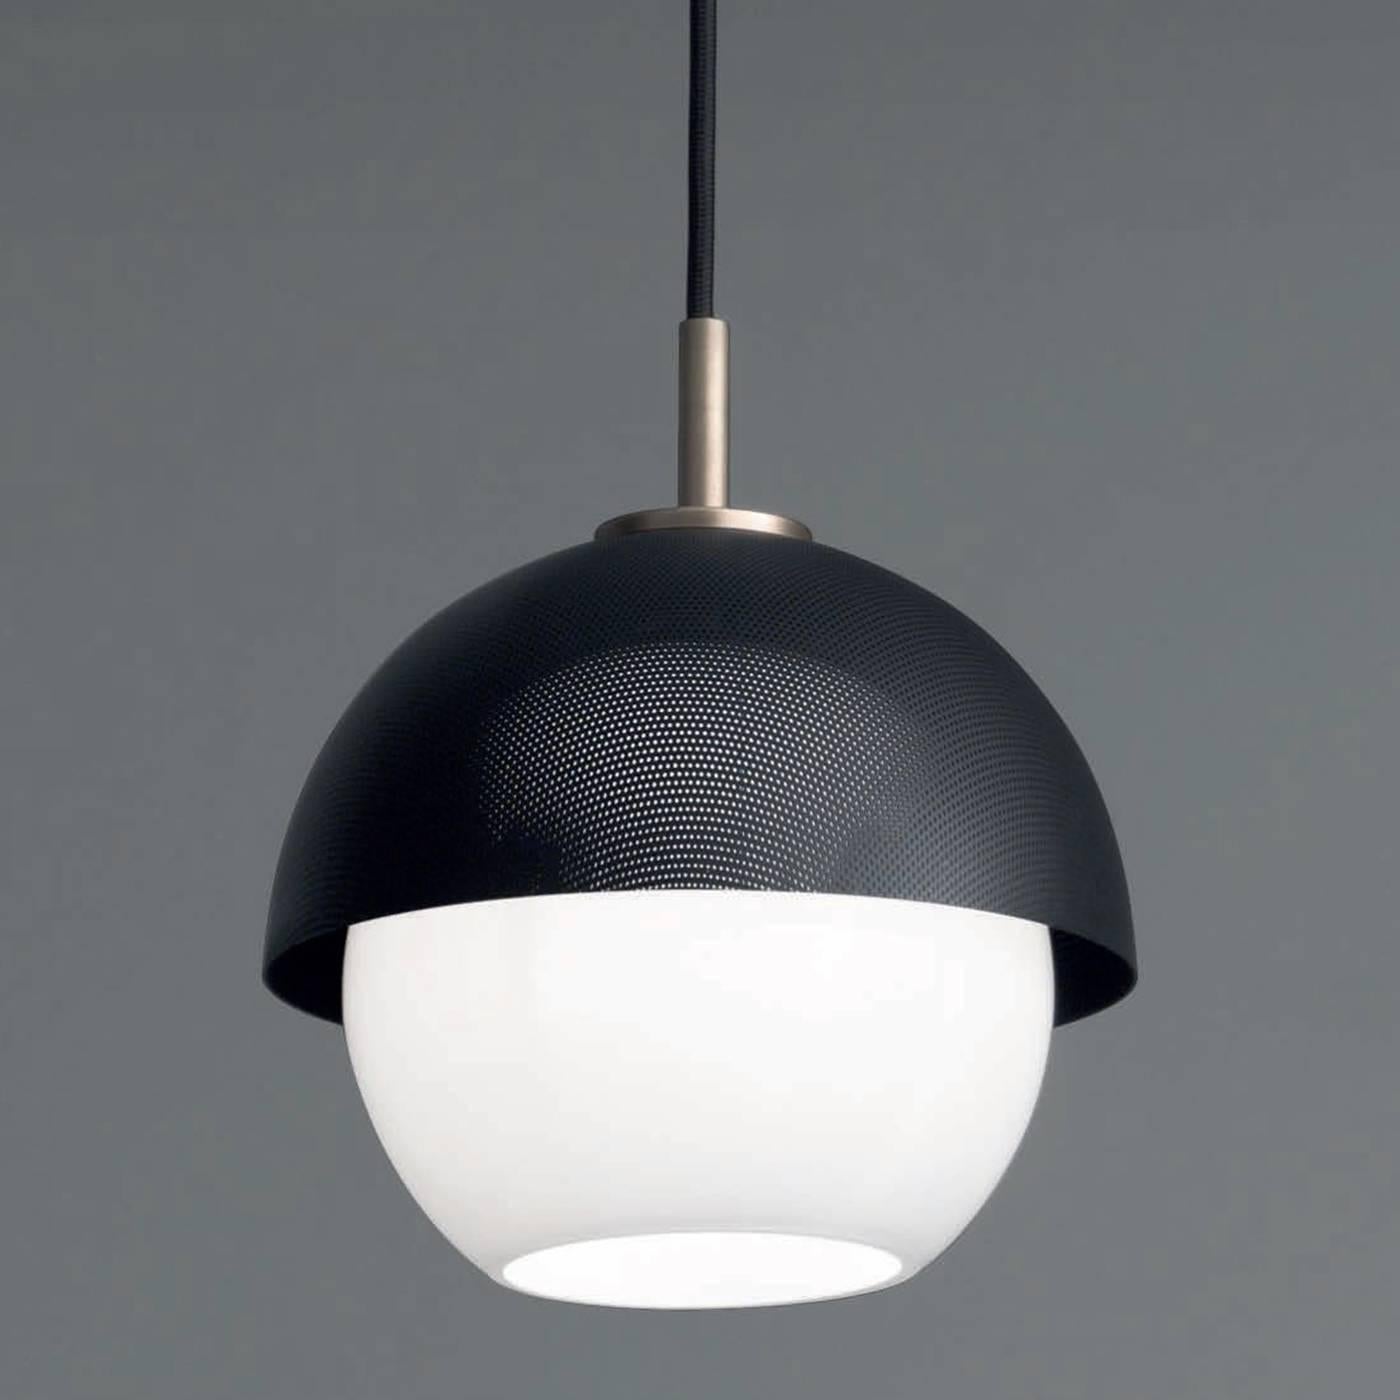 Italian Urban Suspension 1 Ceiling Lamp For Sale